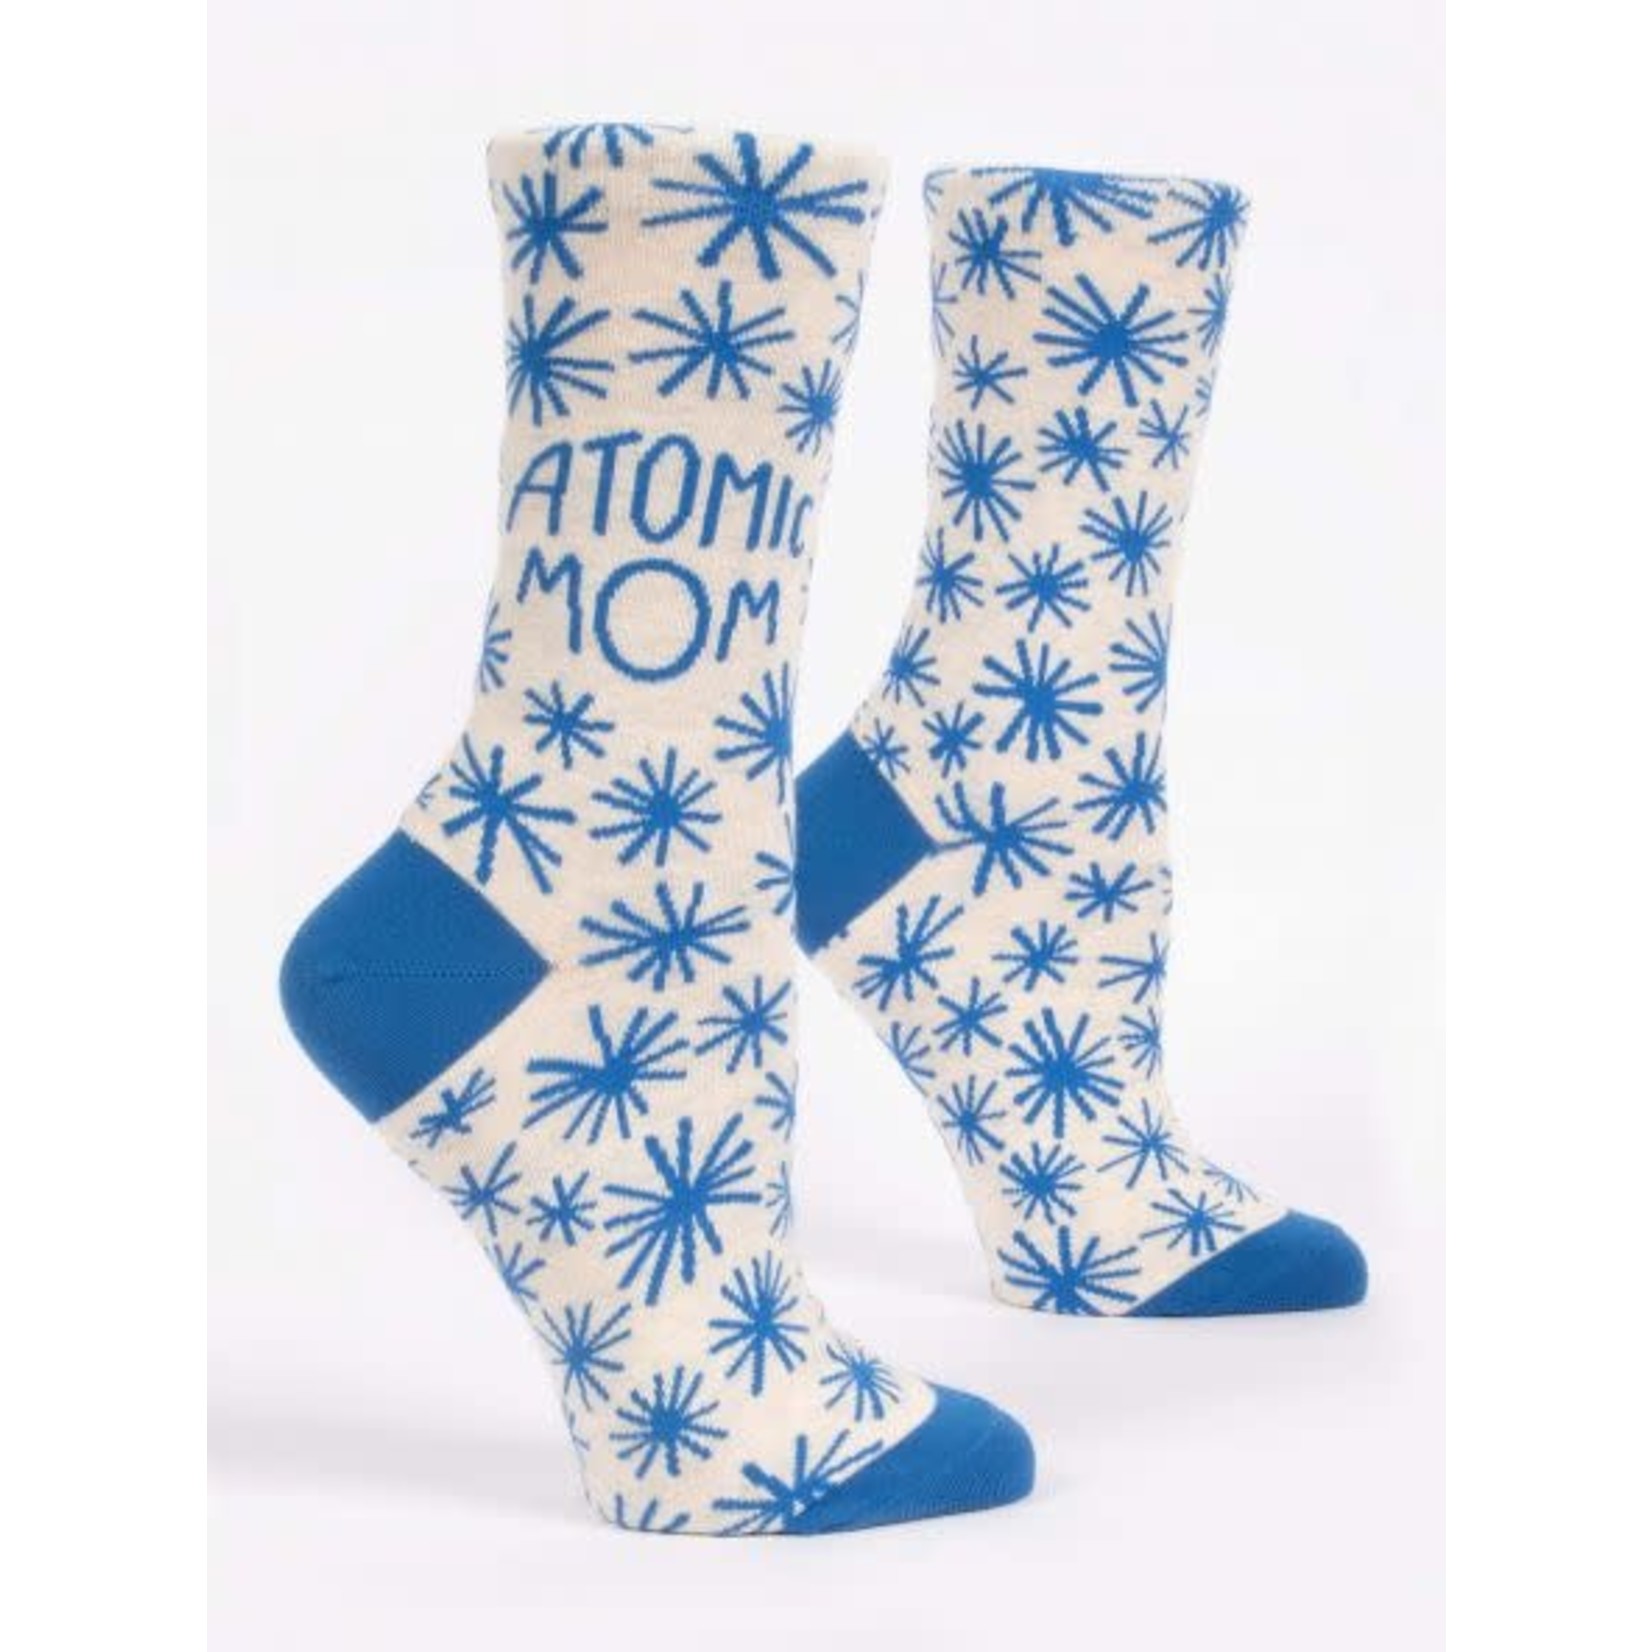 Women's Socks - Atomic Mom